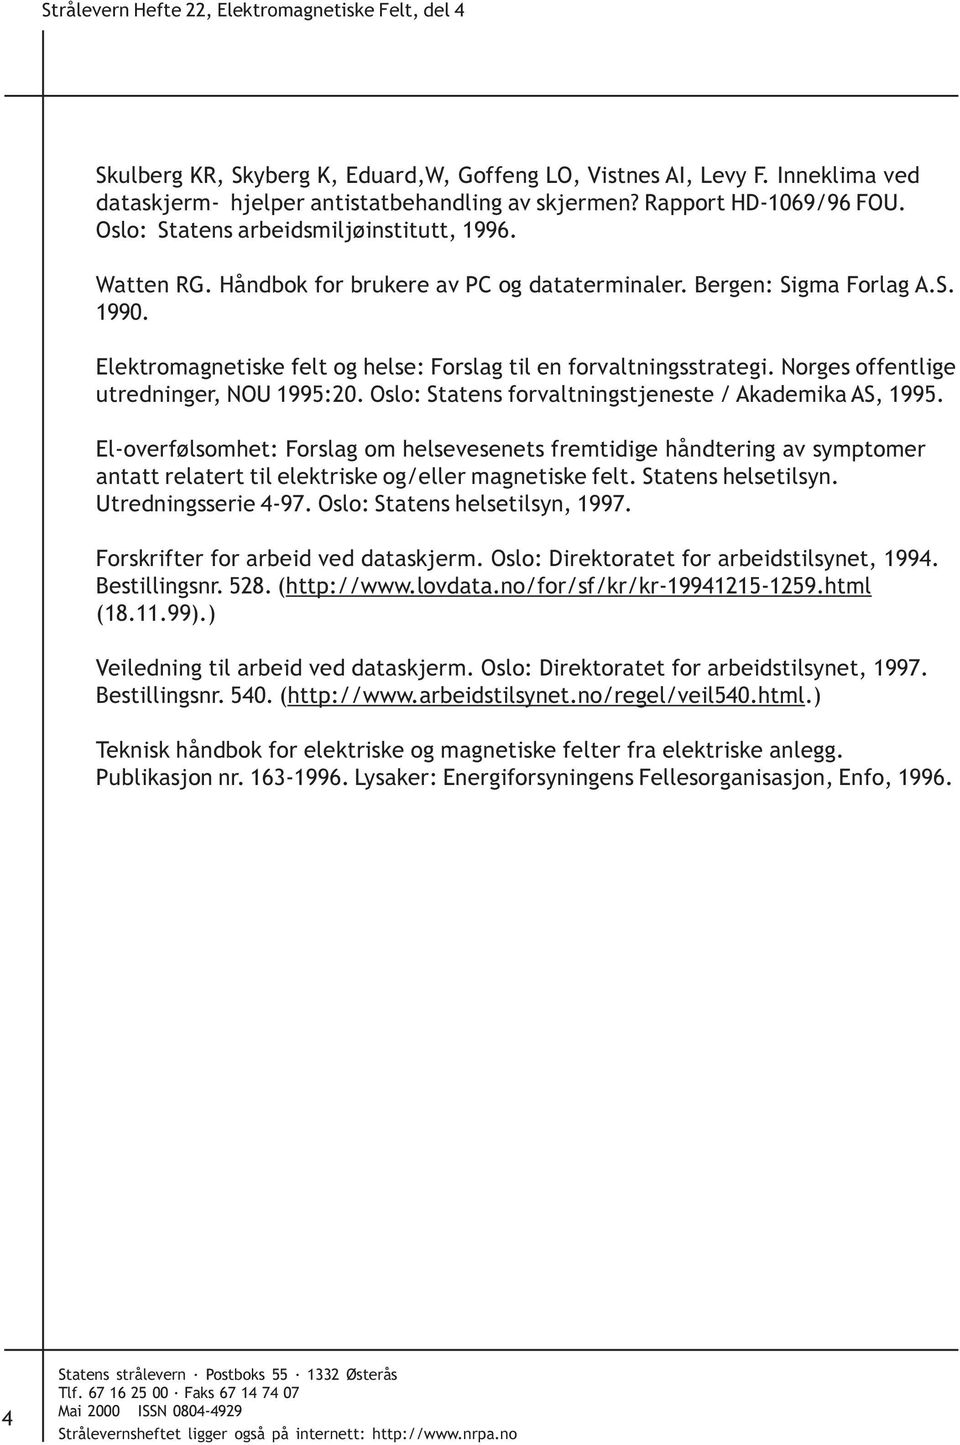 Elektromagnetiske felt og helse: Forslag til en forvaltningsstrategi. Norges offentlige utredninger, NOU 1995:20. Oslo: Statens forvaltningstjeneste / Akademika AS, 1995.